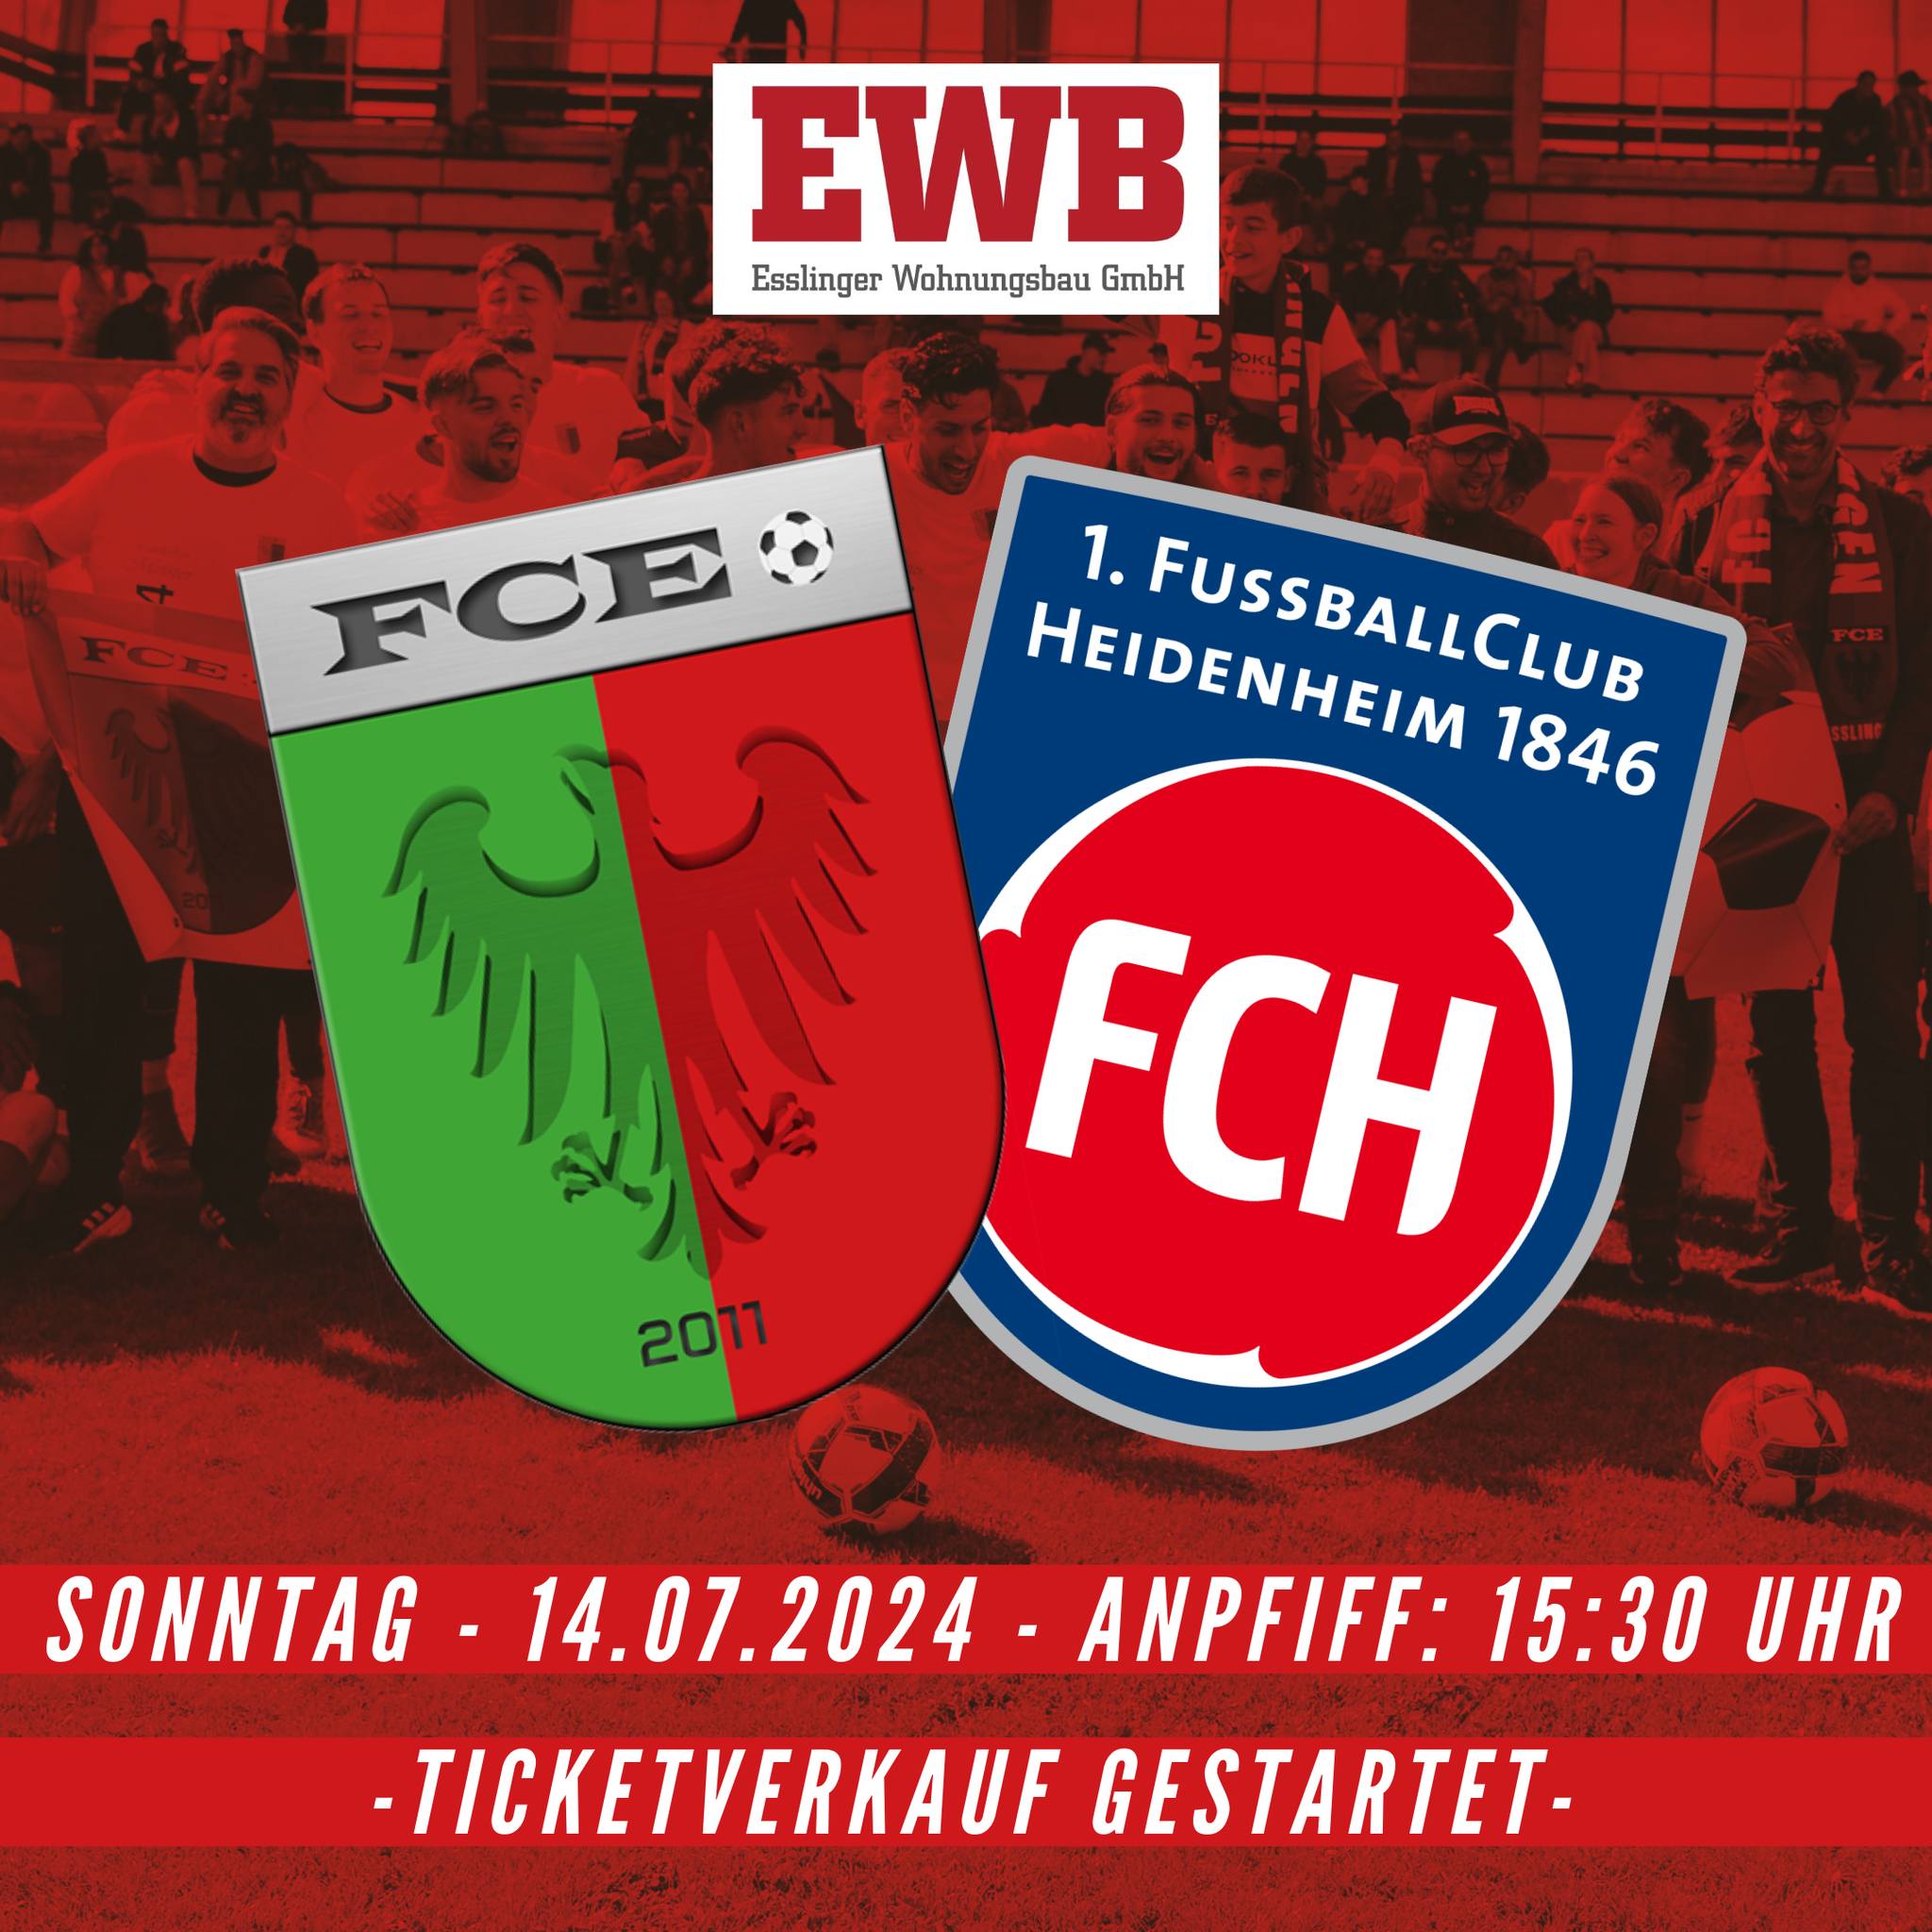 Plakat für das Spiel FCE gegen FCH